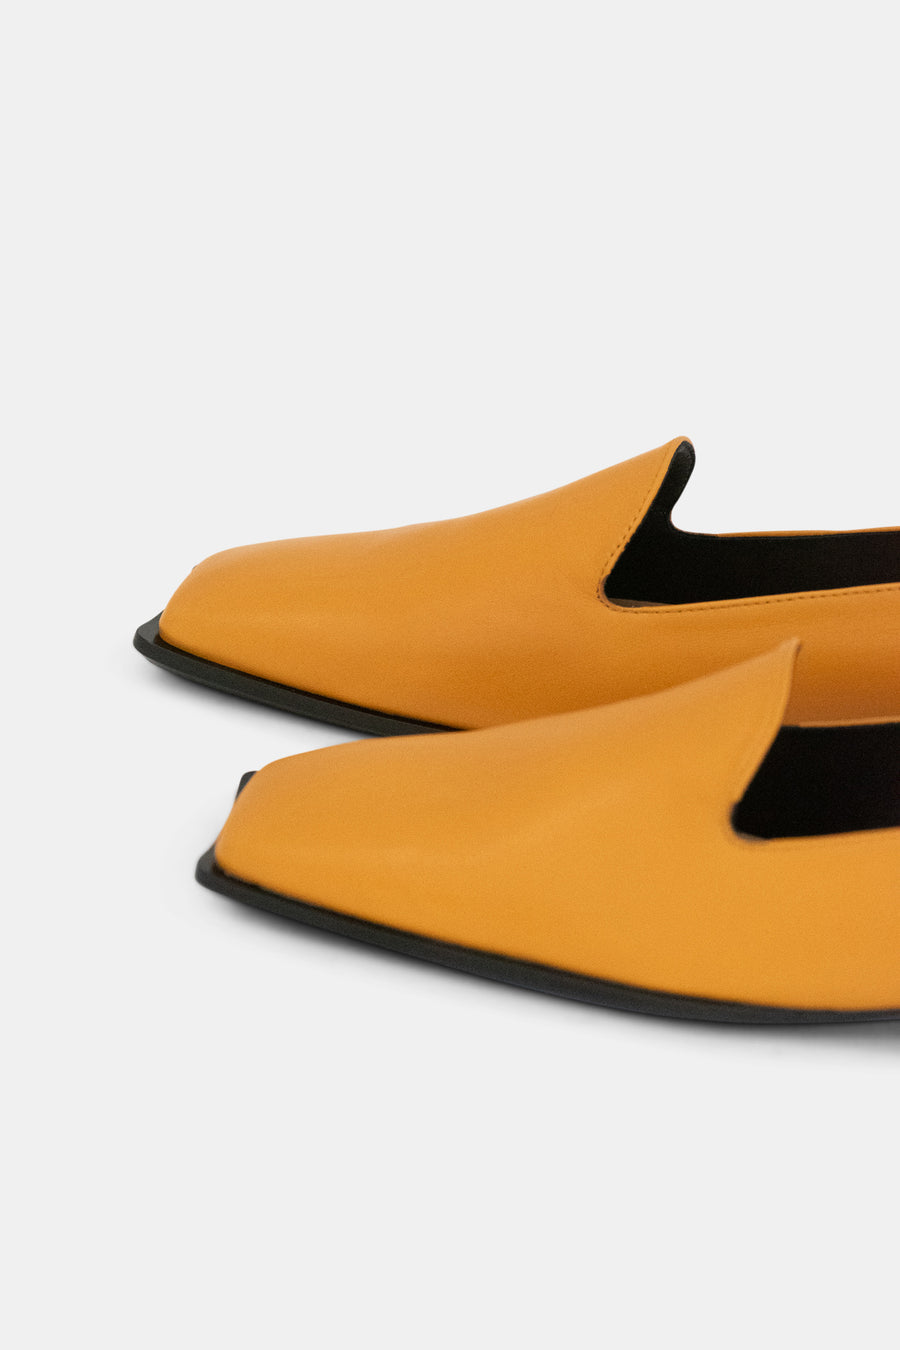 Slip-On Loafer Burnt Orange - Sample Size 37